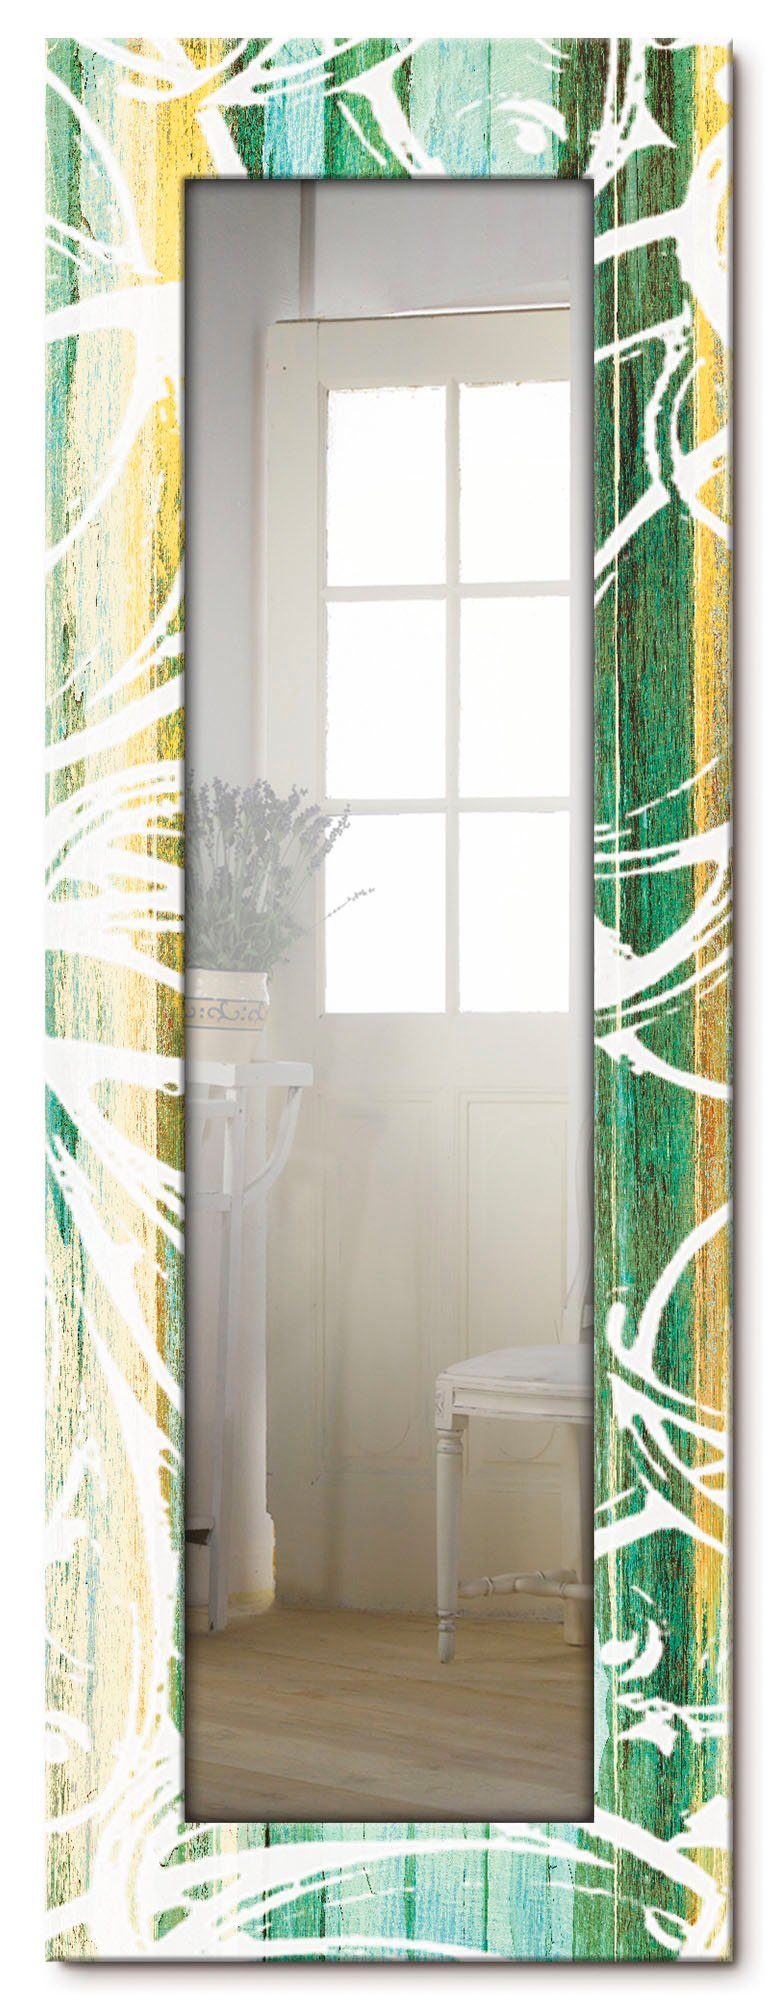 Artland Sierspiegel Ornamenten in moderne stijl ingelijste spiegel voor het hele lichaam met motiefrand, geschikt voor kleine, smalle hal, halspiegel, mirror spiegel omrand om op t